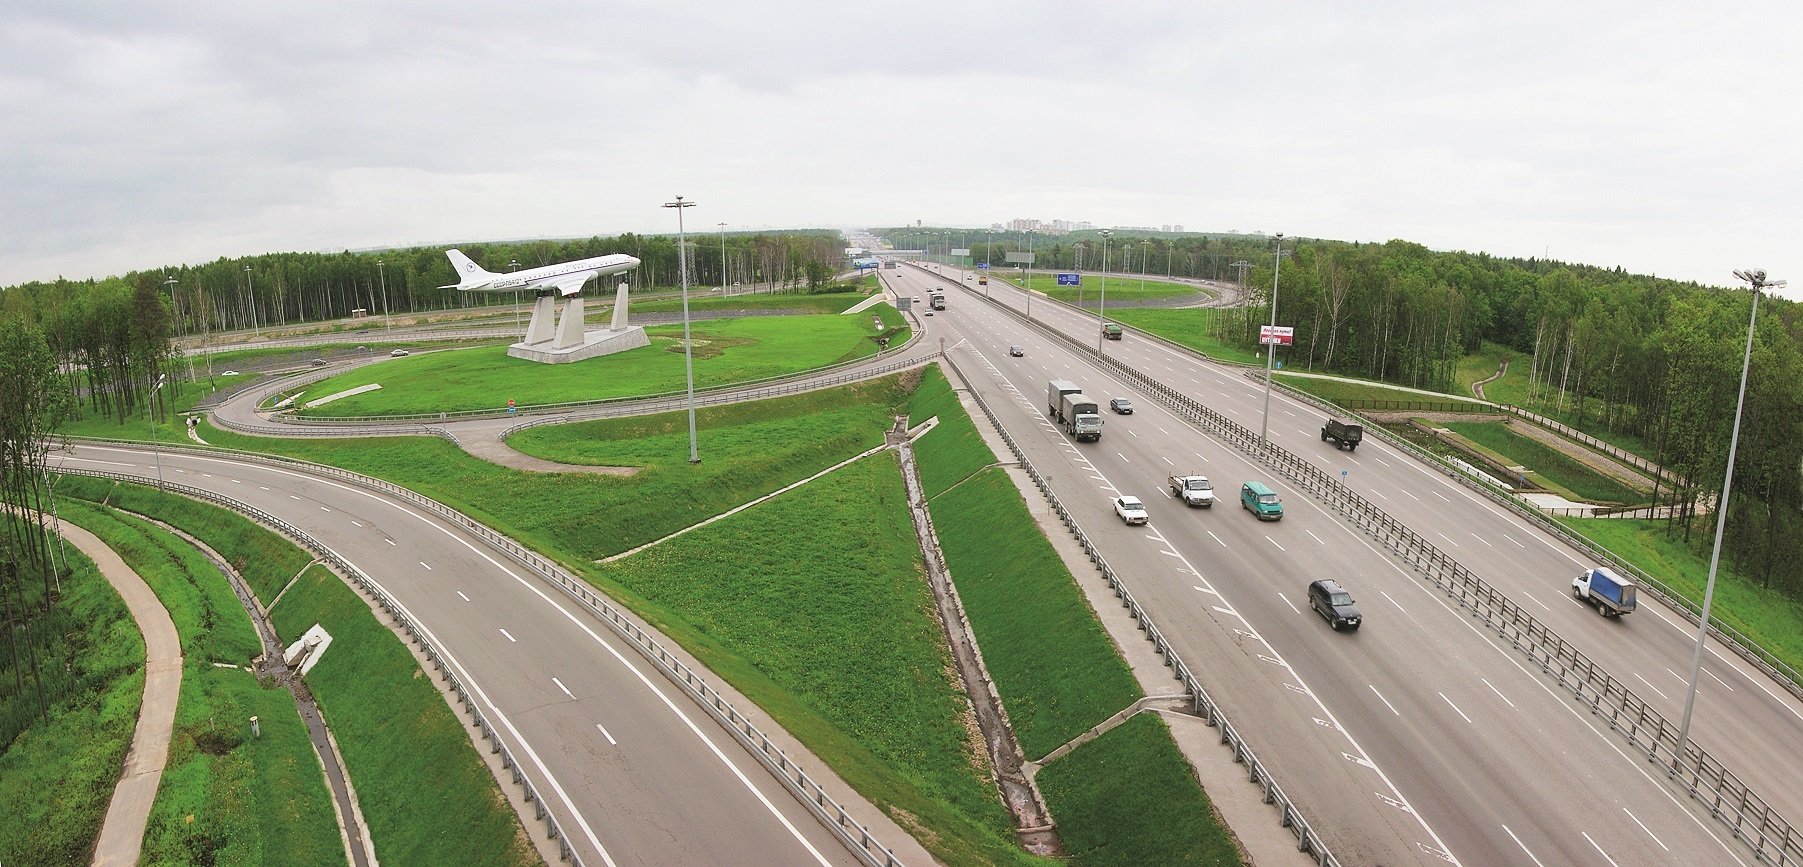 киевское шоссе москва